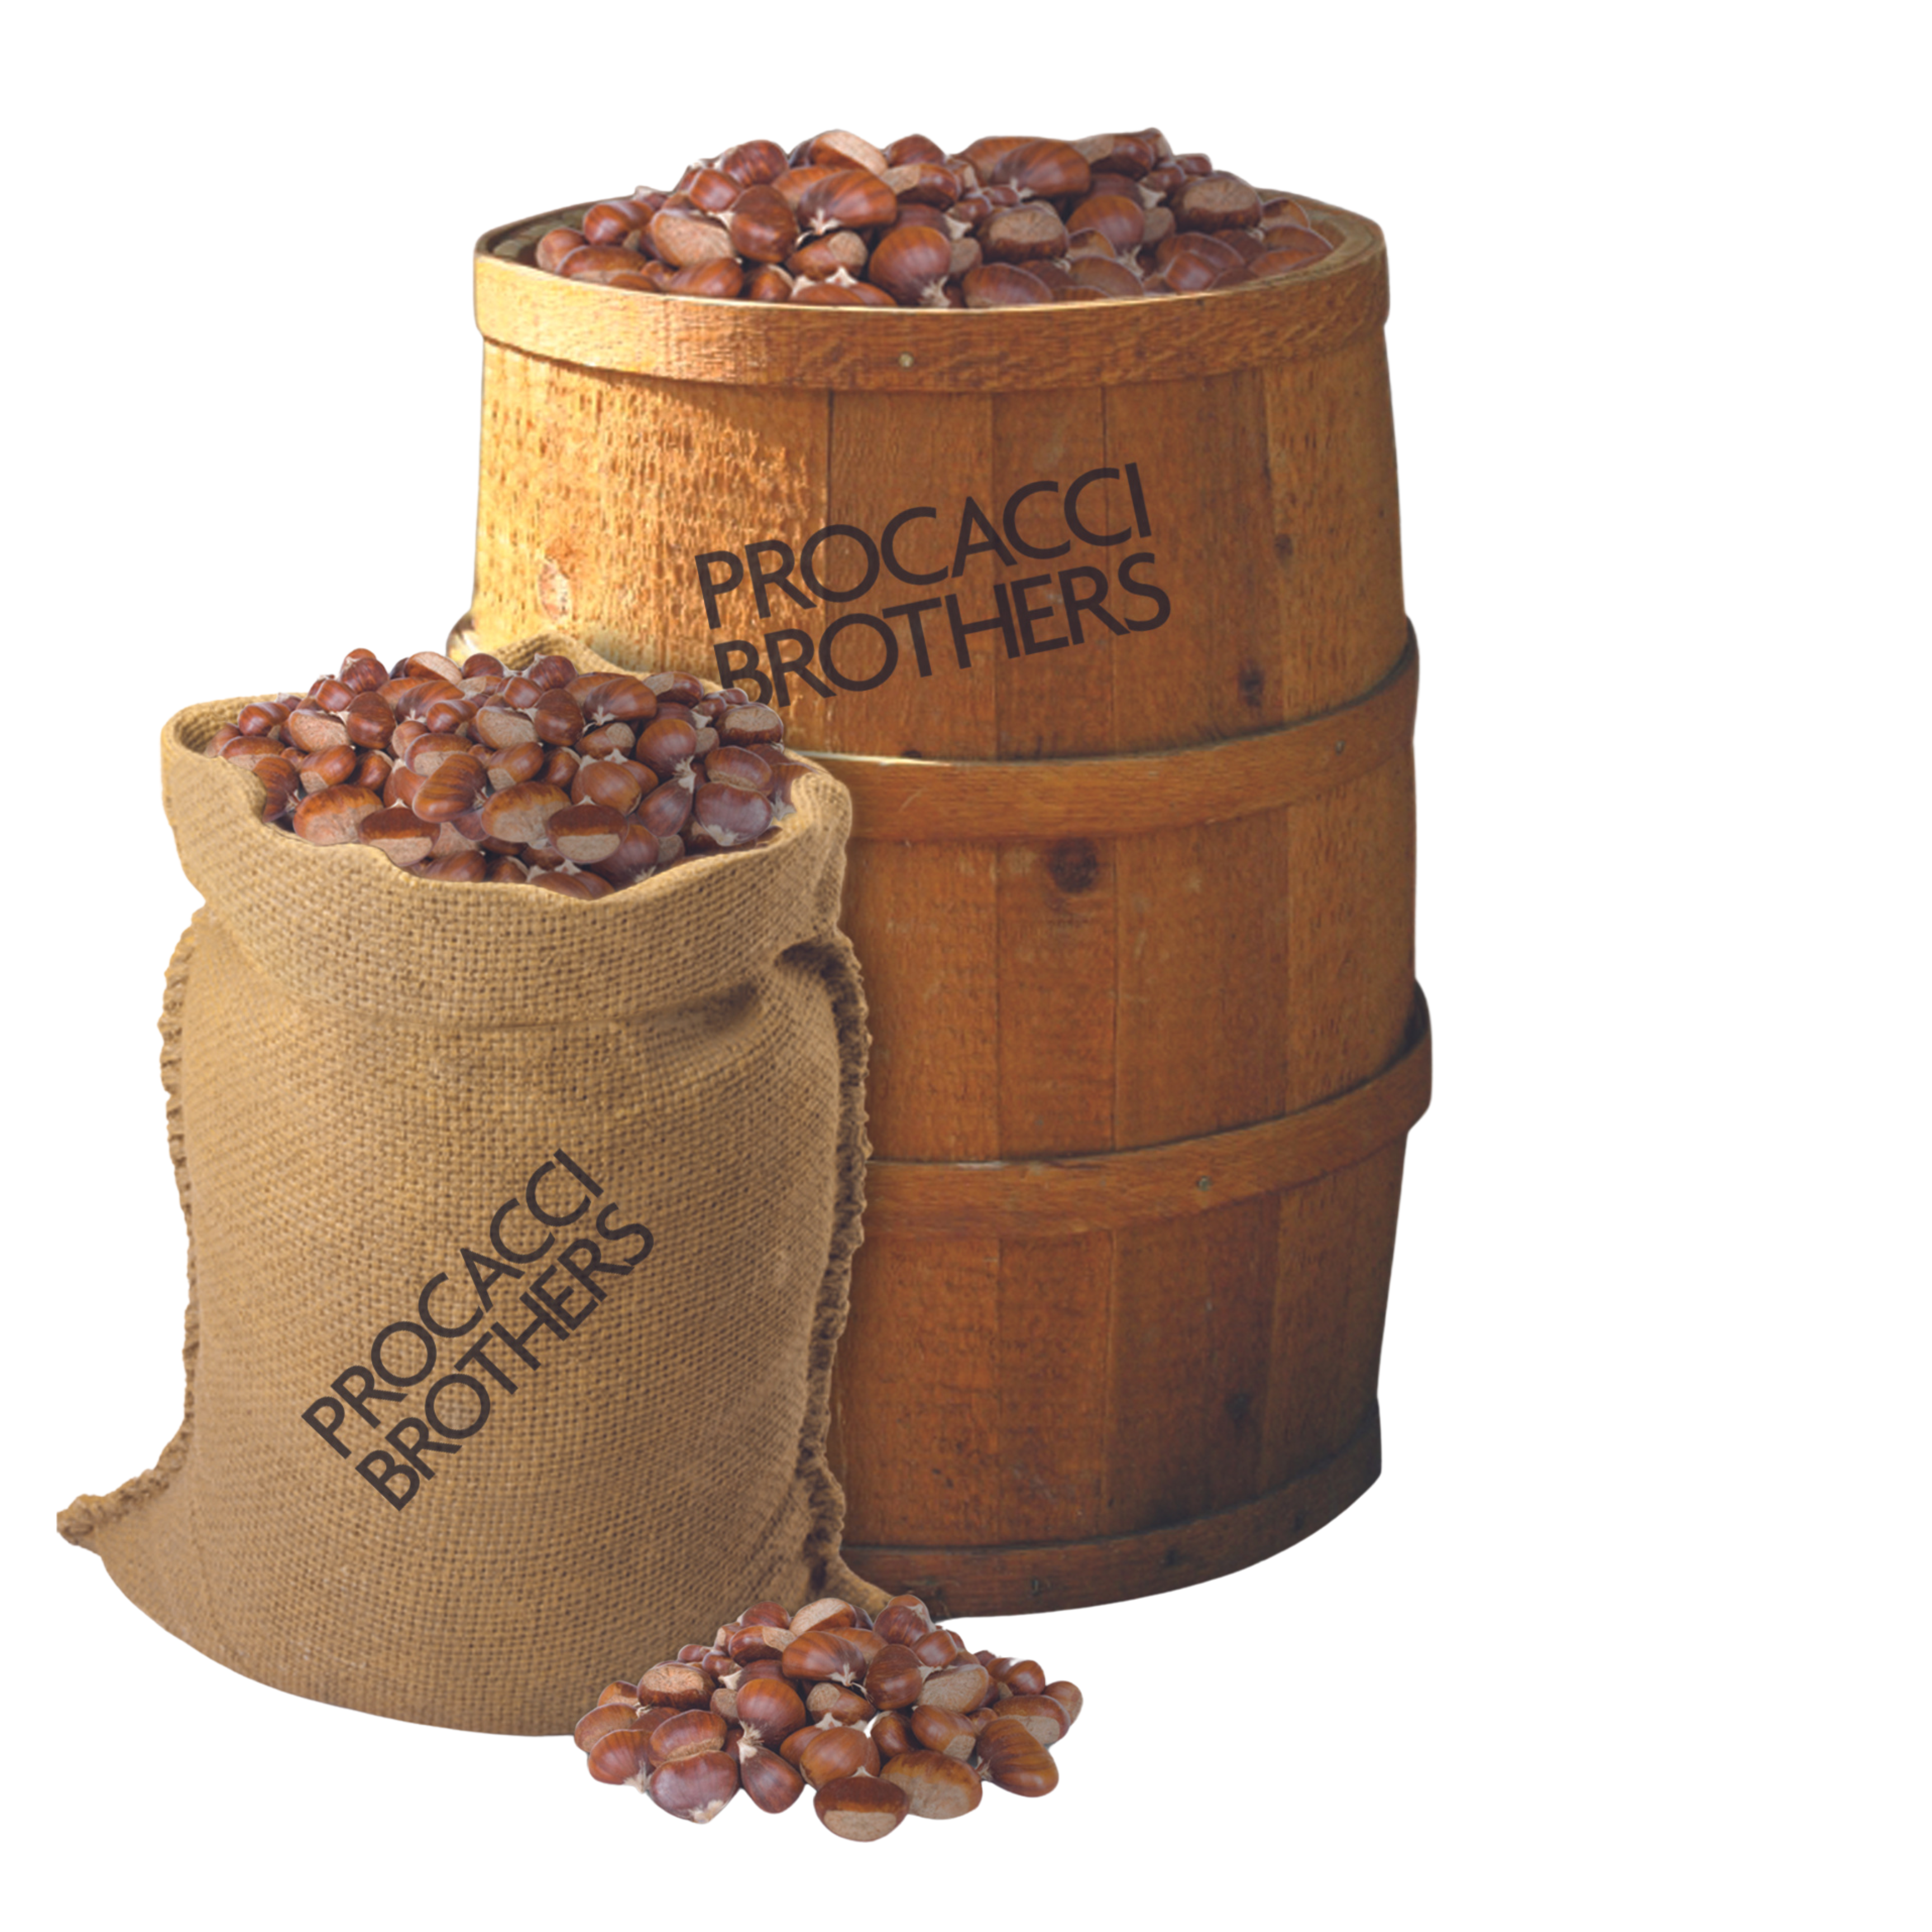 Chestnut barrel and knapsack